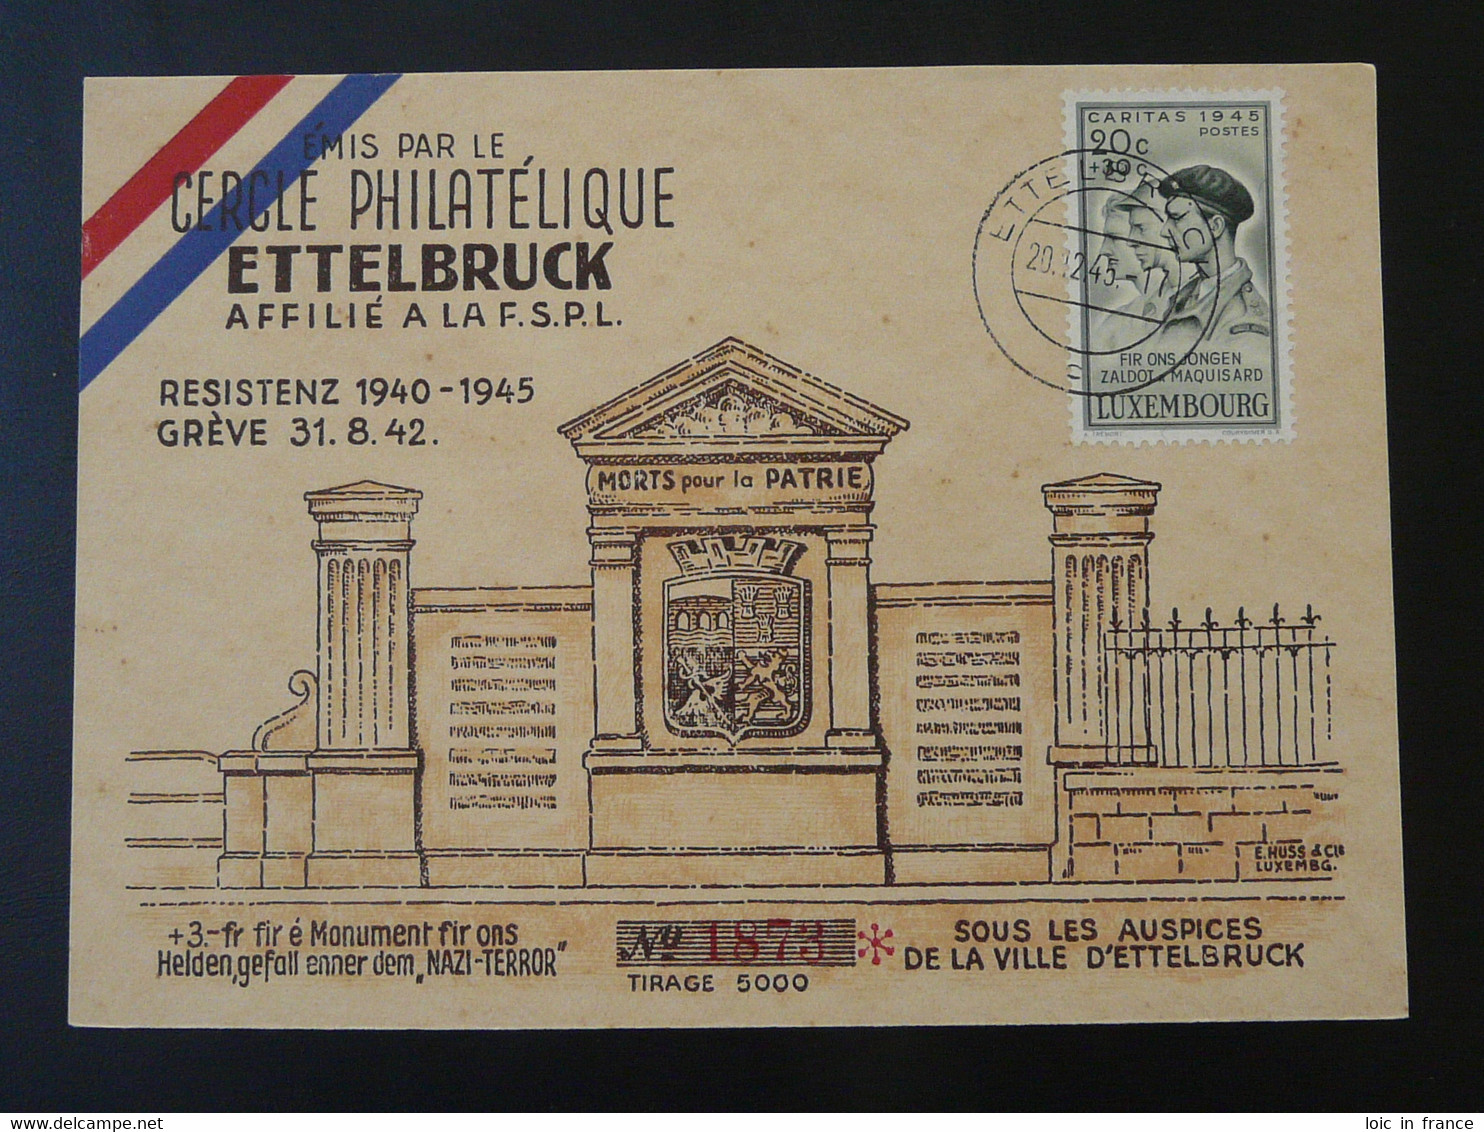 Carte Commemorative Card Résistance Ettelbruck Luxemburg Caritas 1945 - Cartoline Commemorative